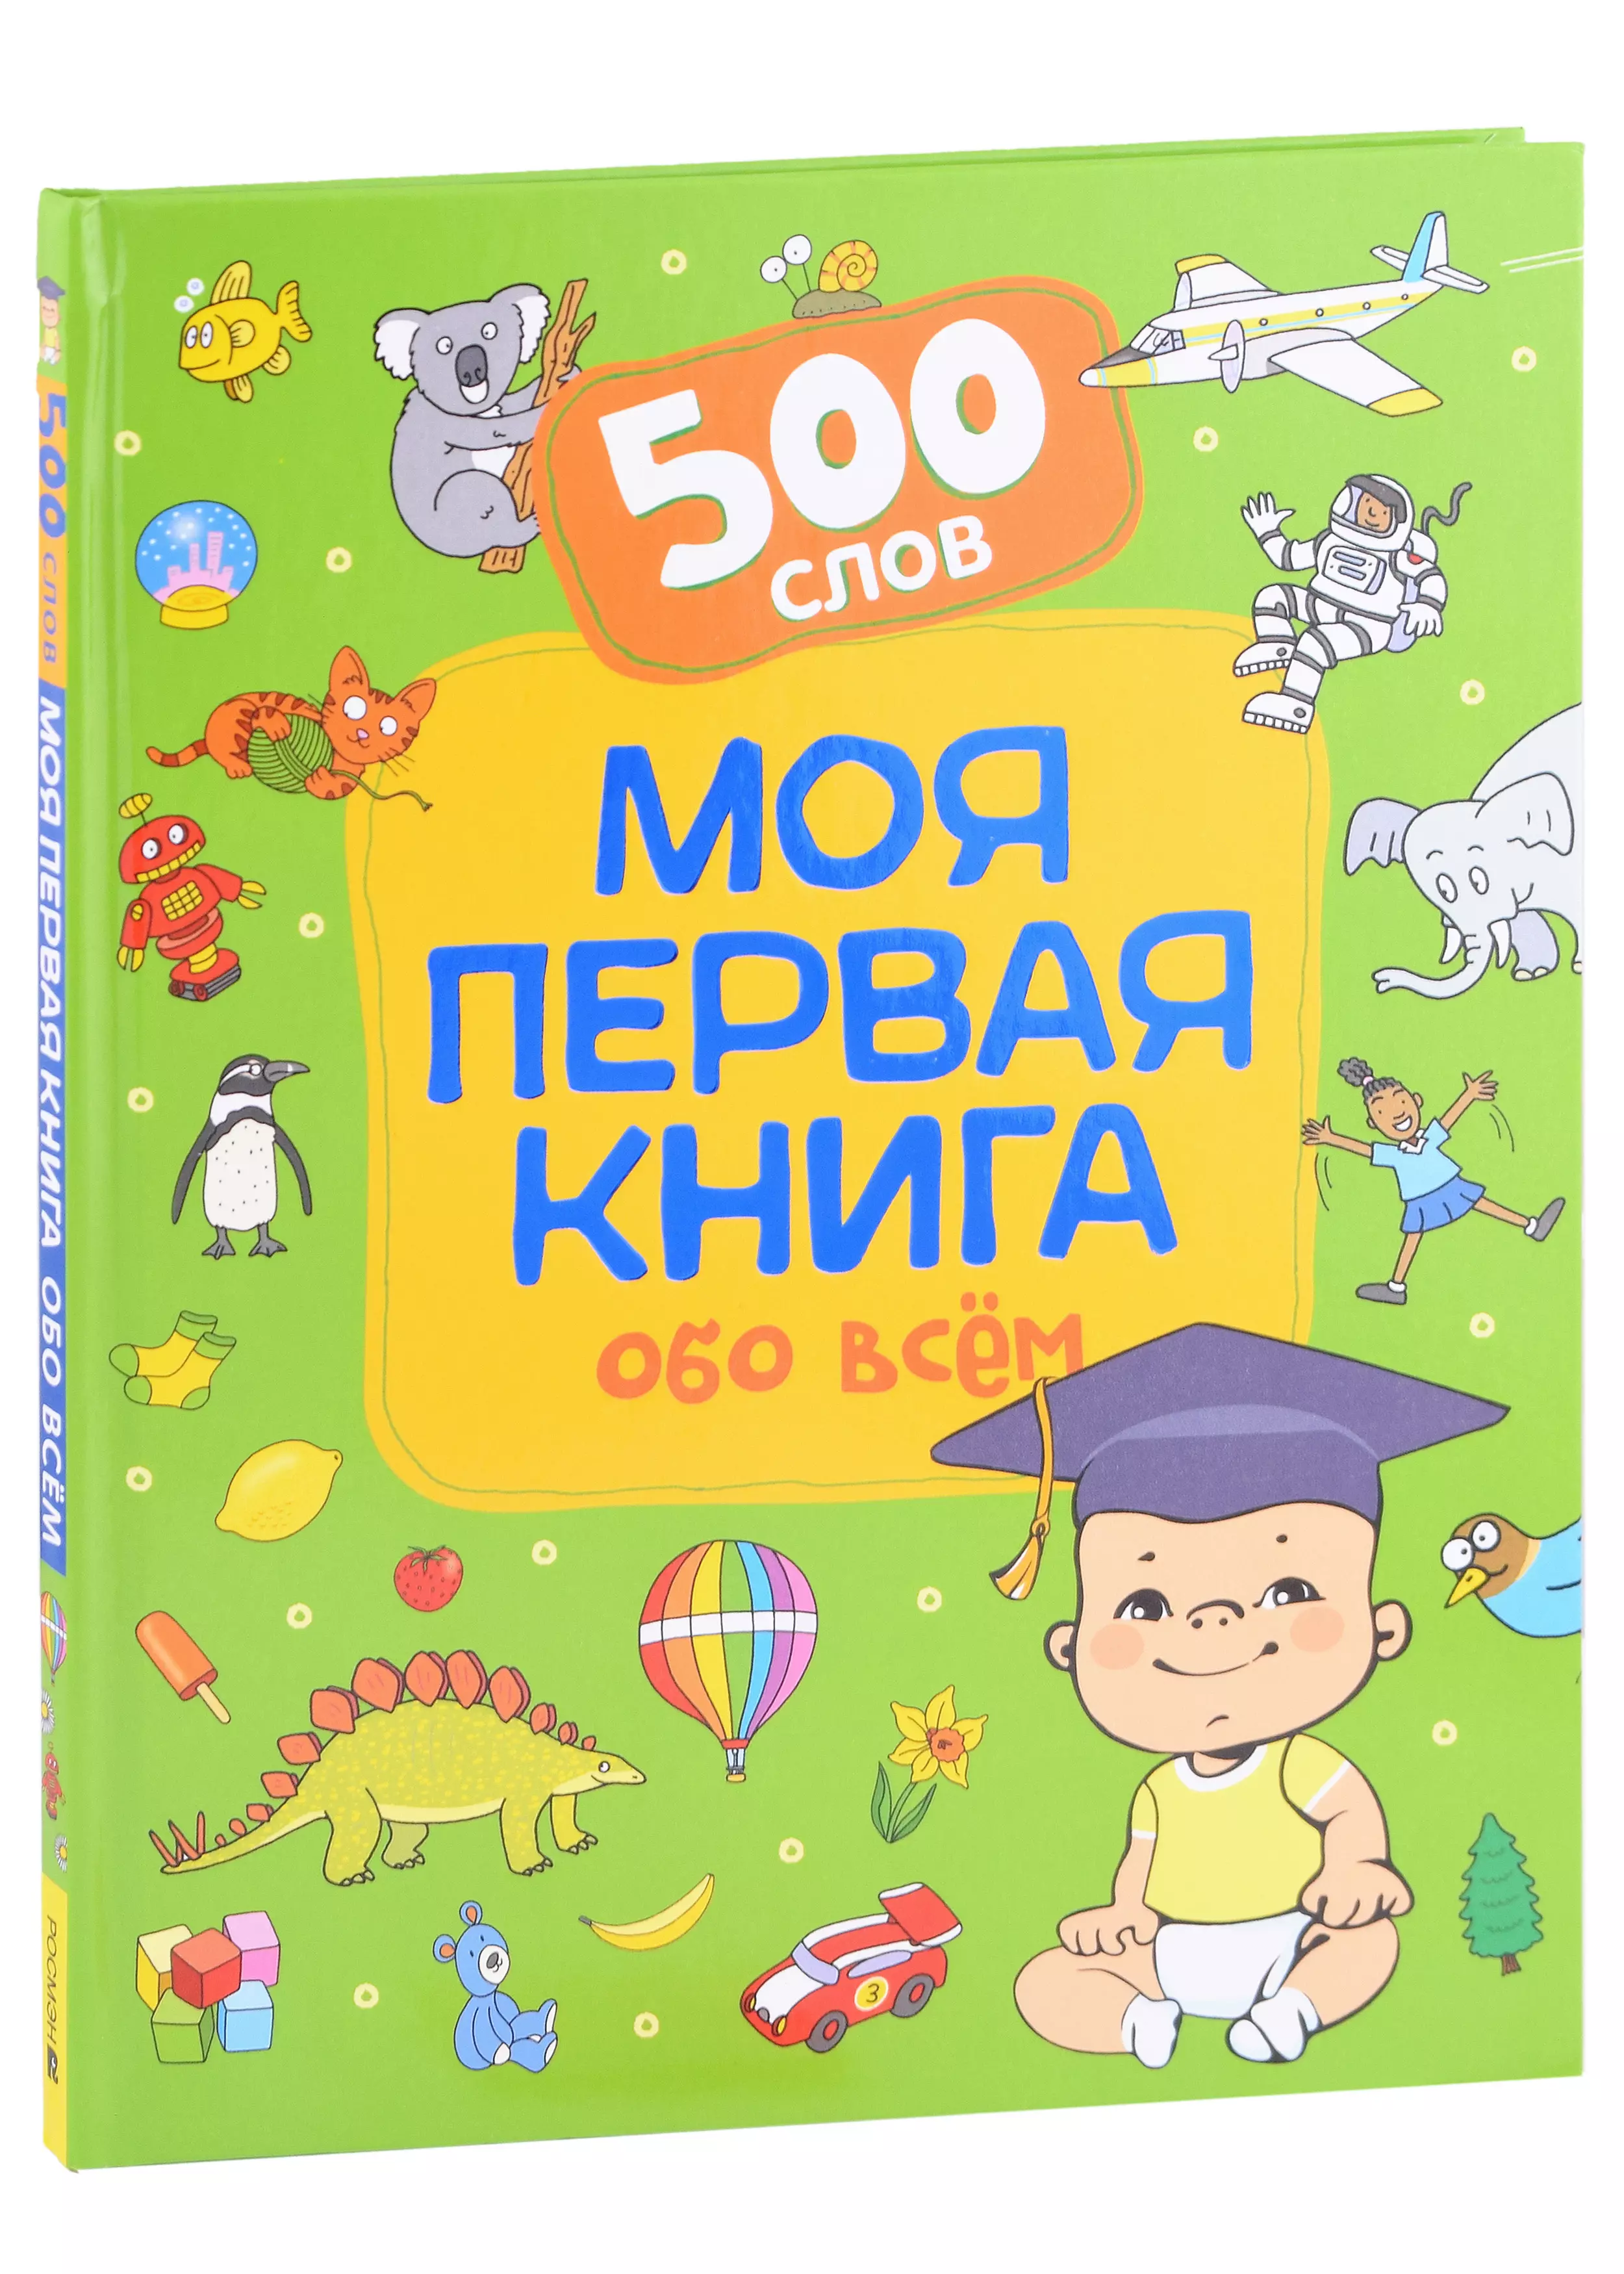 новое поступление первая книга с английскими словами более 500 слов американский школьный учебник детская книга с картинками для просвеще Моя первая книга обо всем. 500 слов